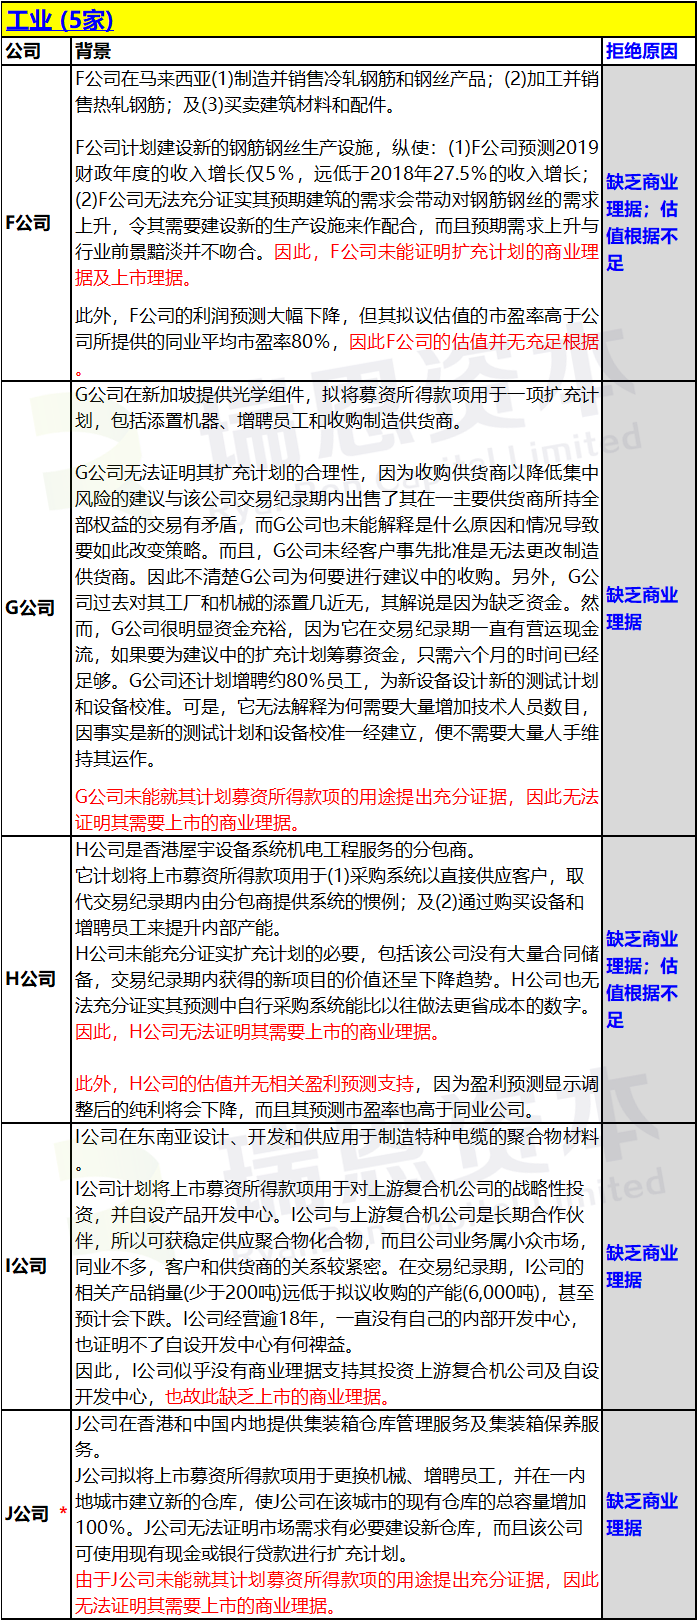 香港IPO上市申请失败：被联交所拒绝的18宗案例汇总 (2019年)